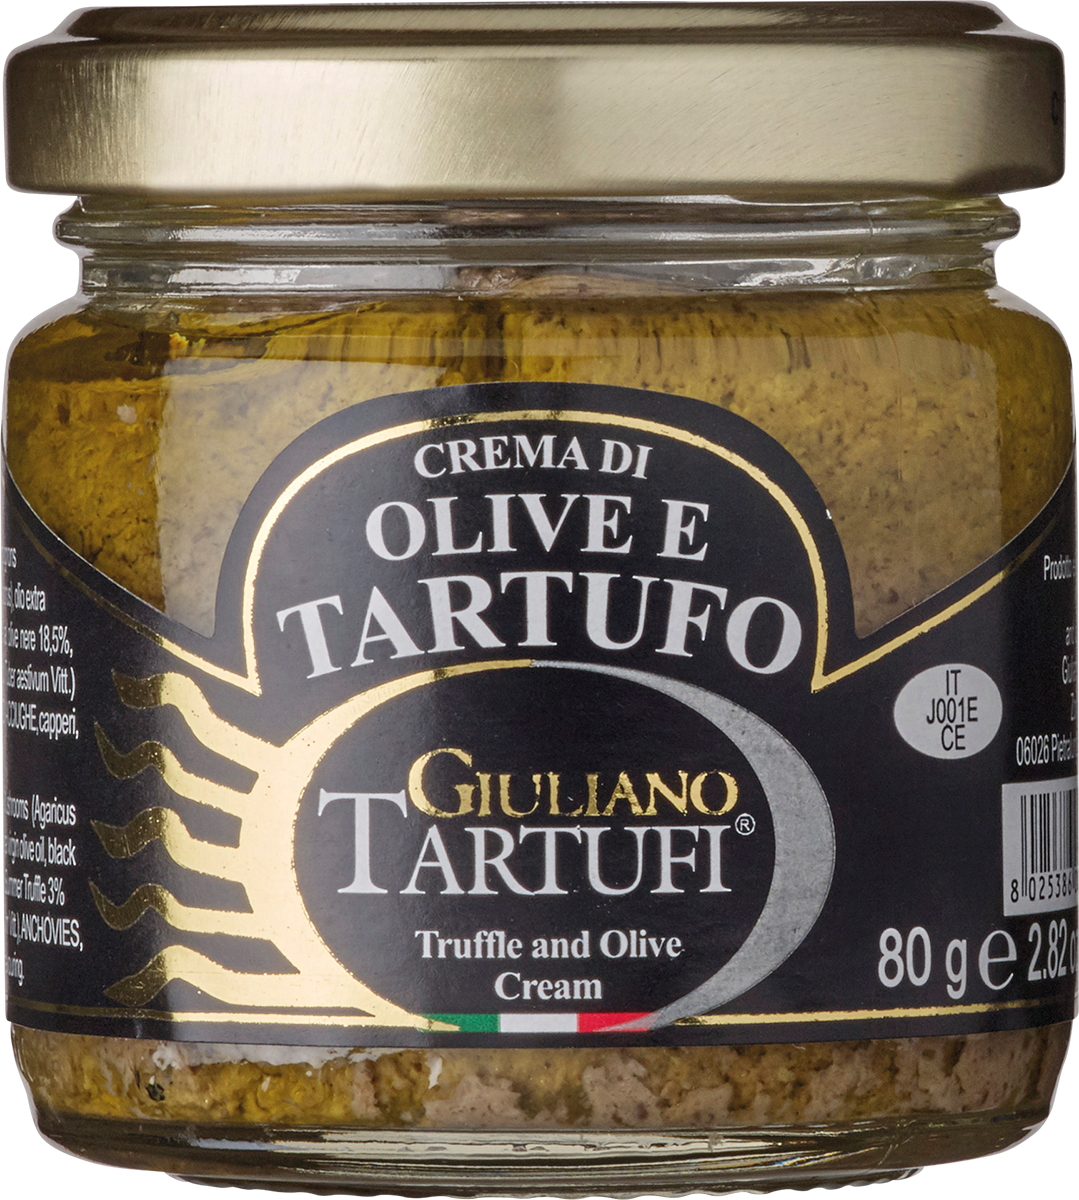 7611020 - Crema di Olive e Tartufo